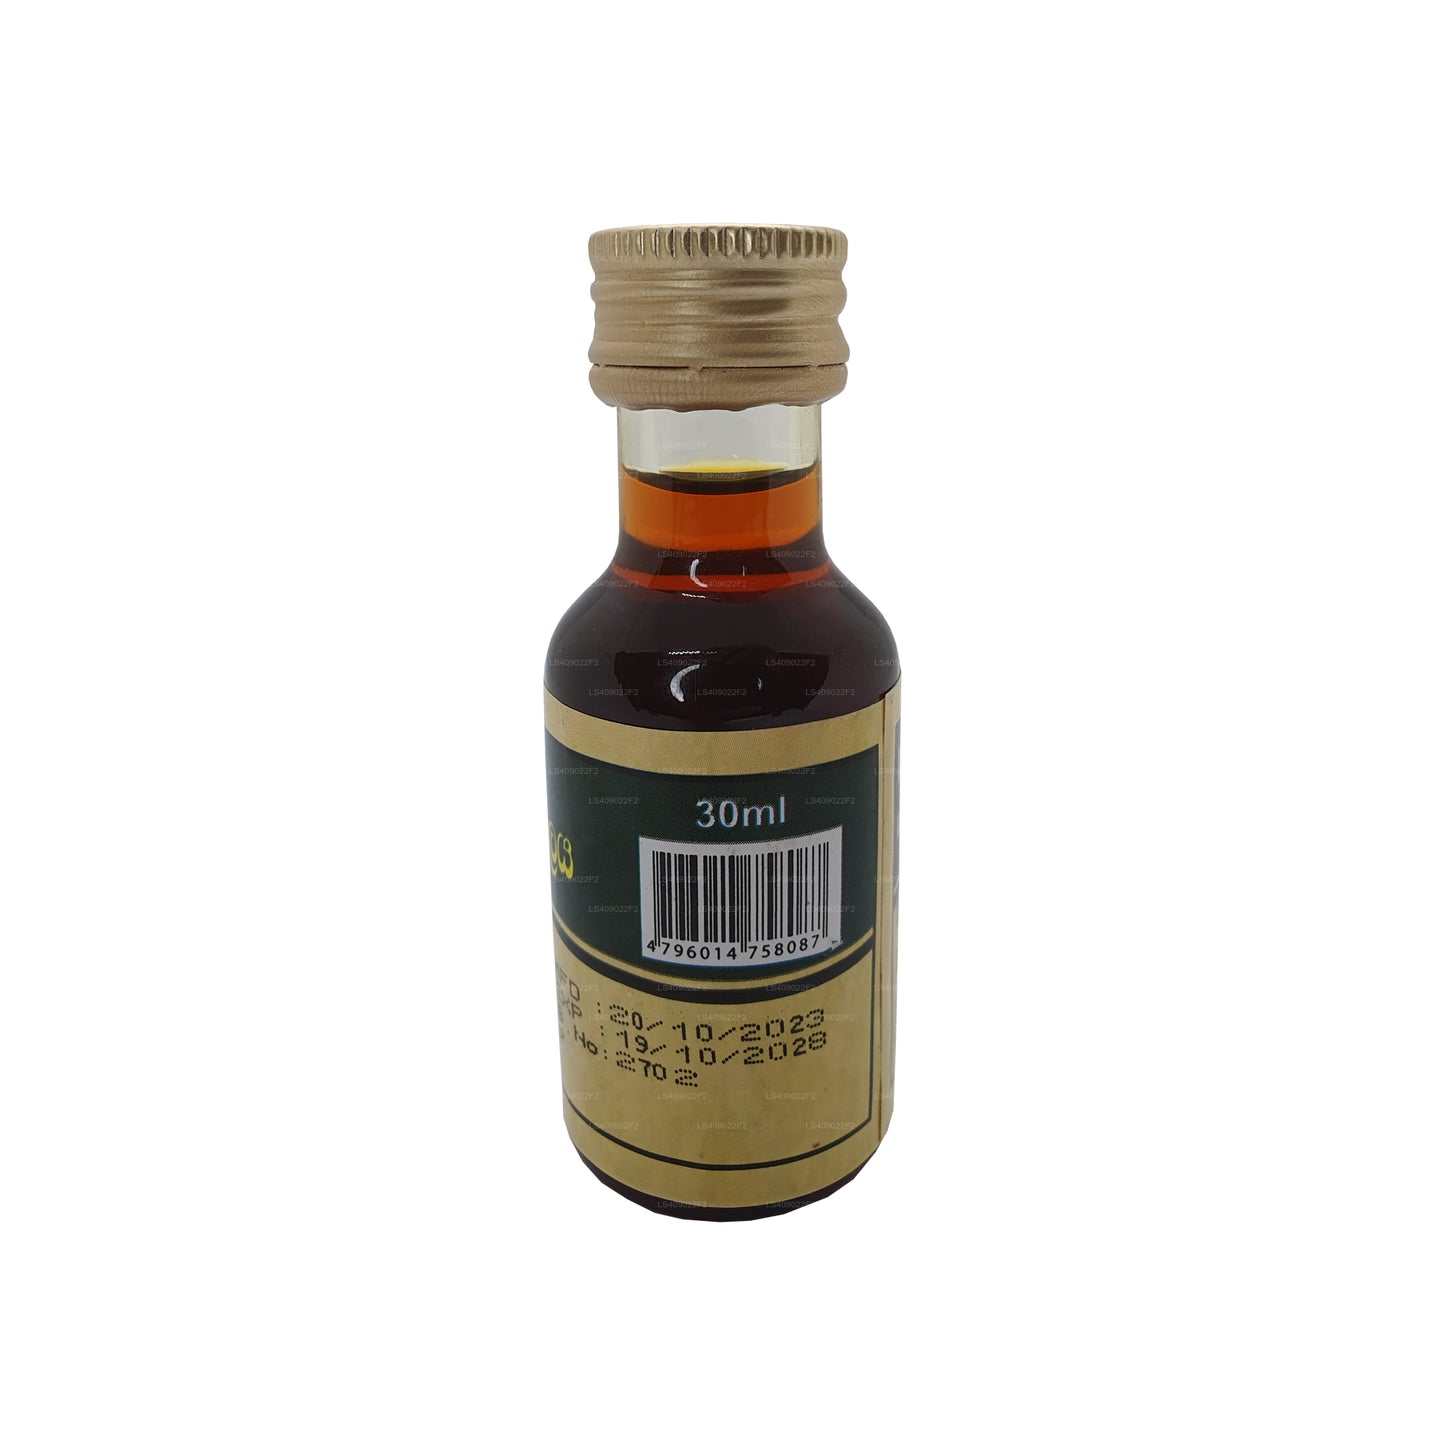 Pasyale Maha Narayana Öl (30 ml)